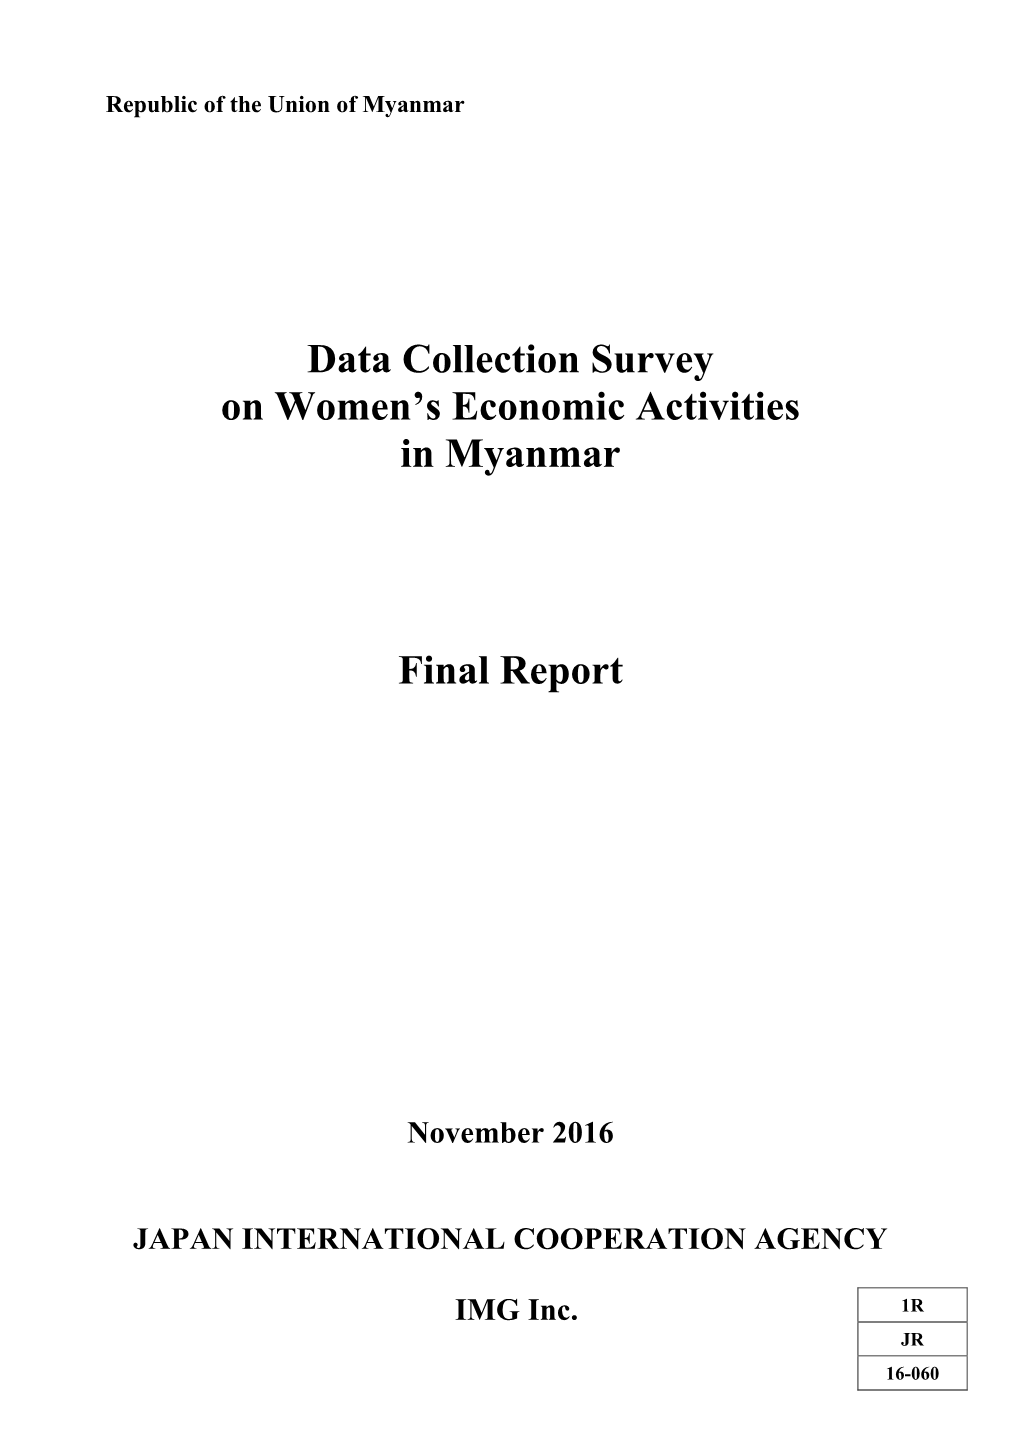 Data Collection Survey on Women's Economic Activities in Myanmar Final Report